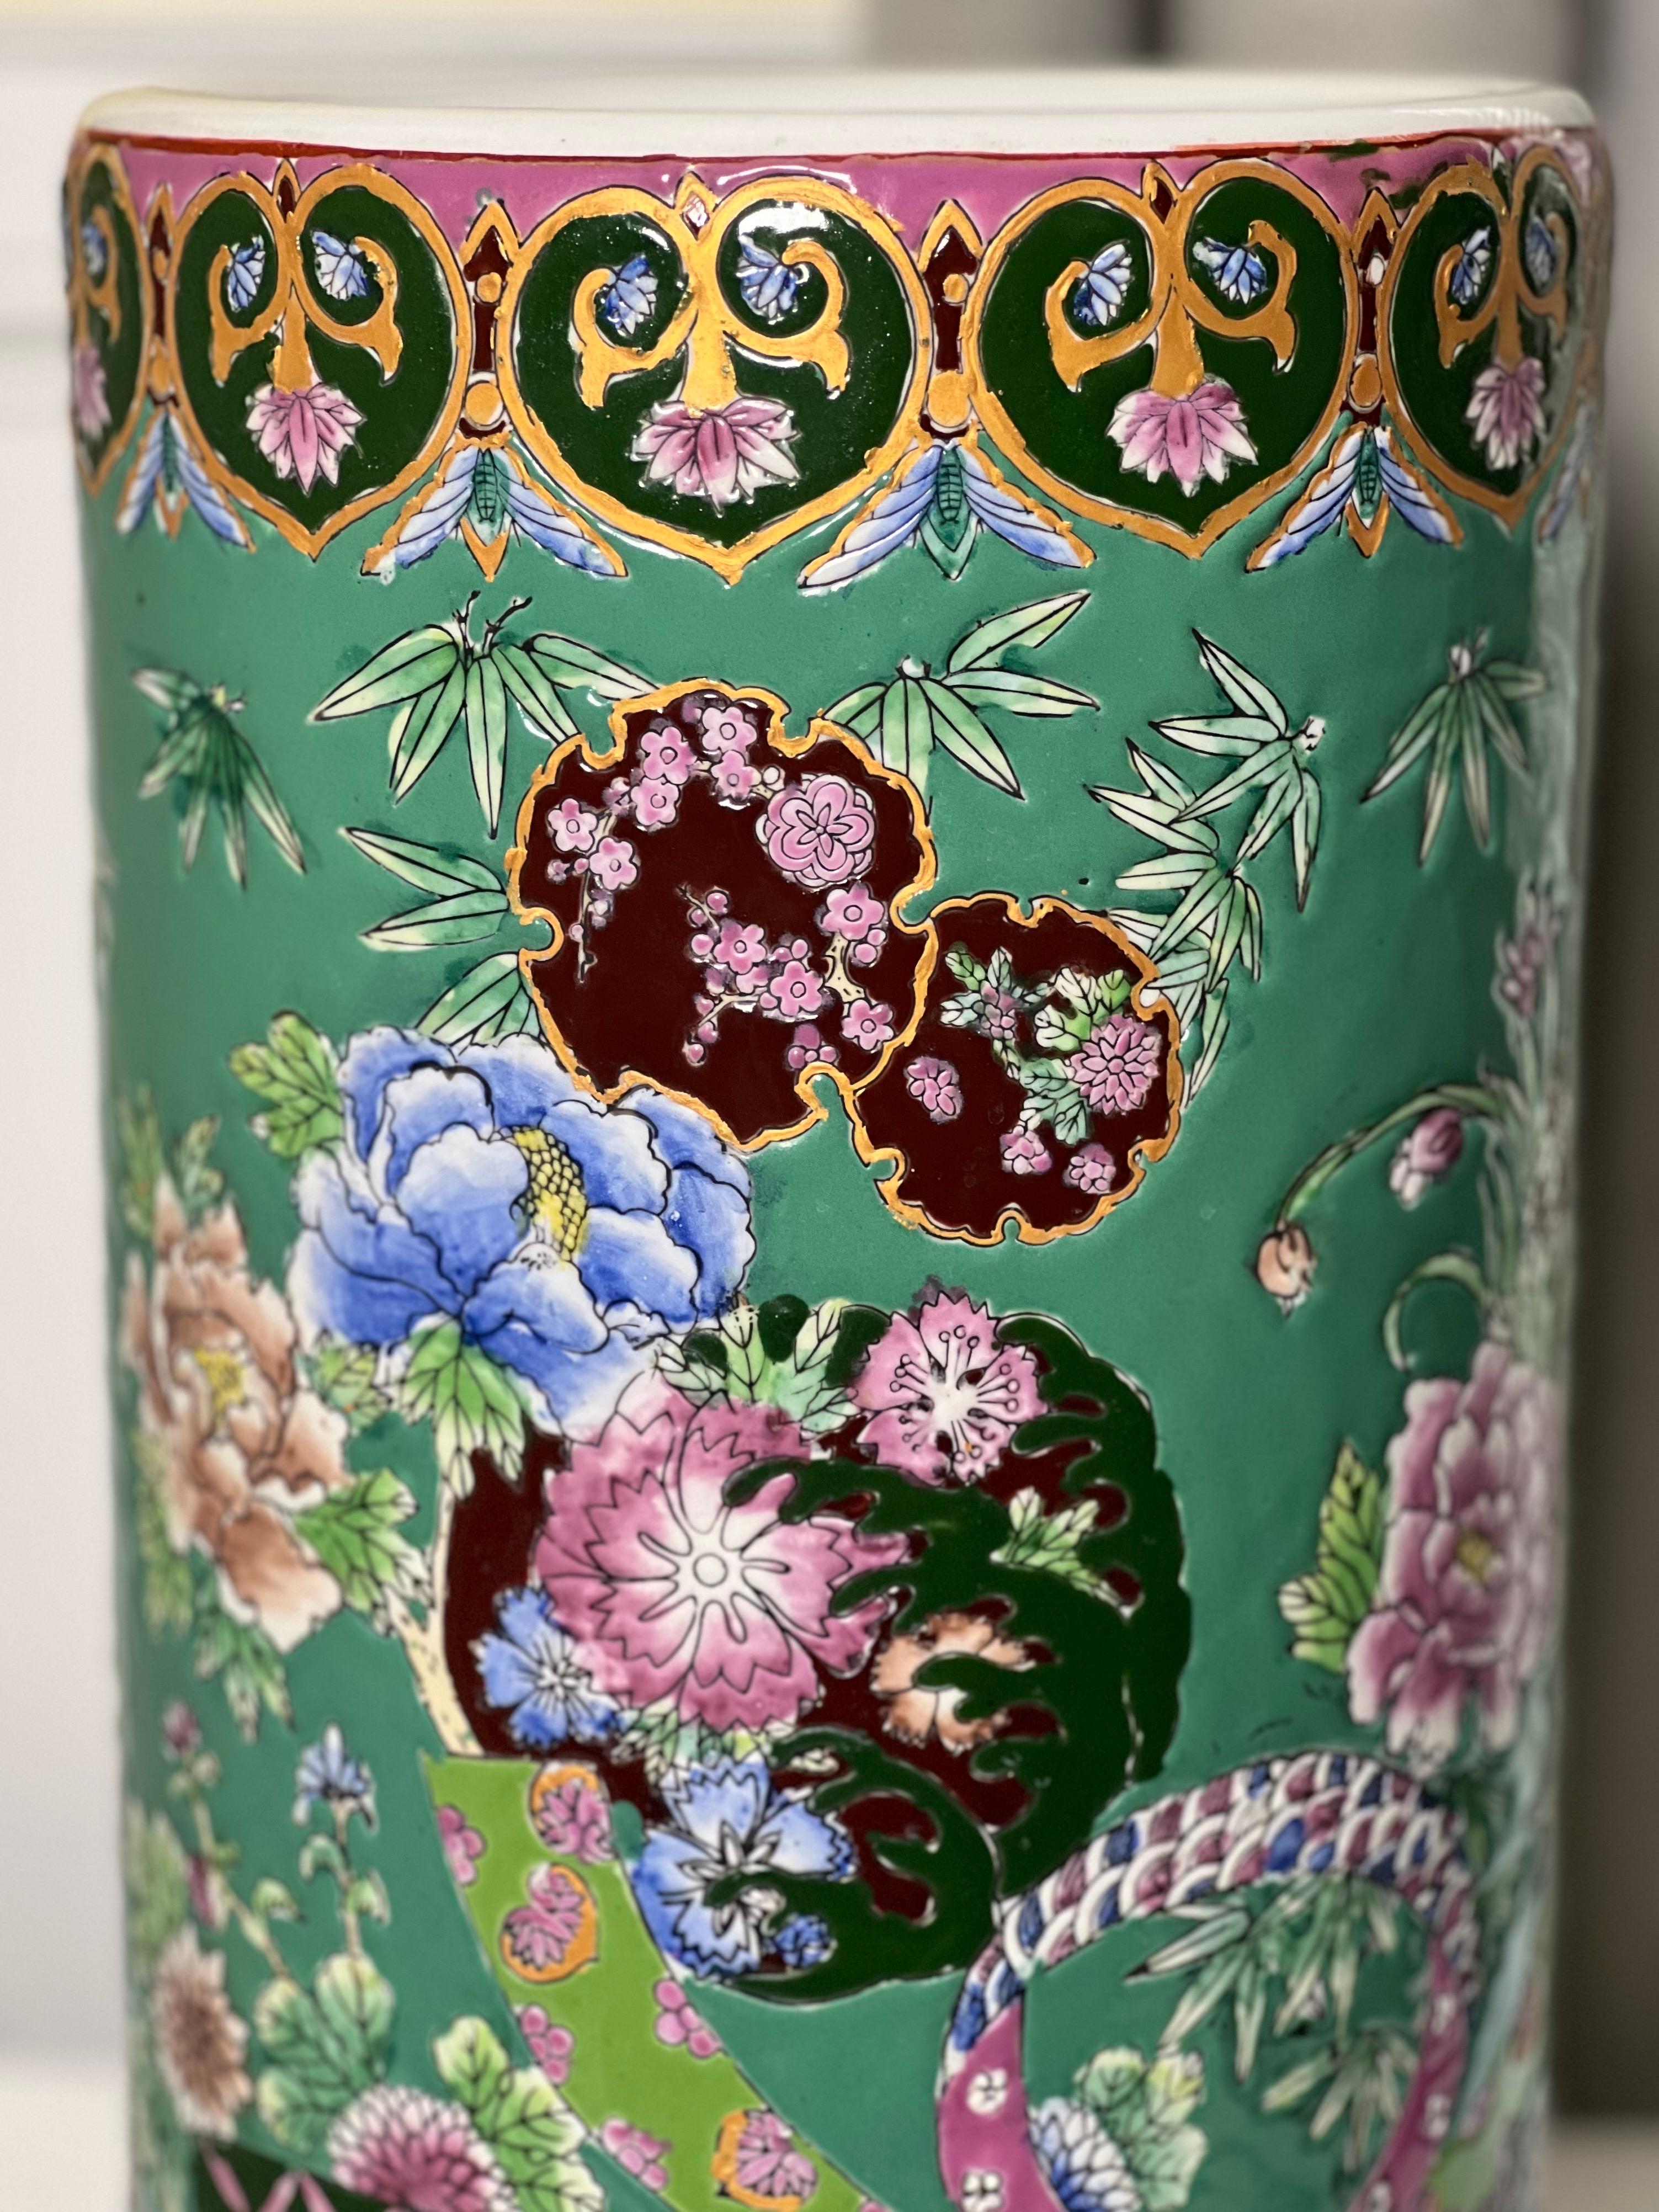 Vintage Chinese Famille Verte Porcelain Umbrella Stand or Vase For Sale 1